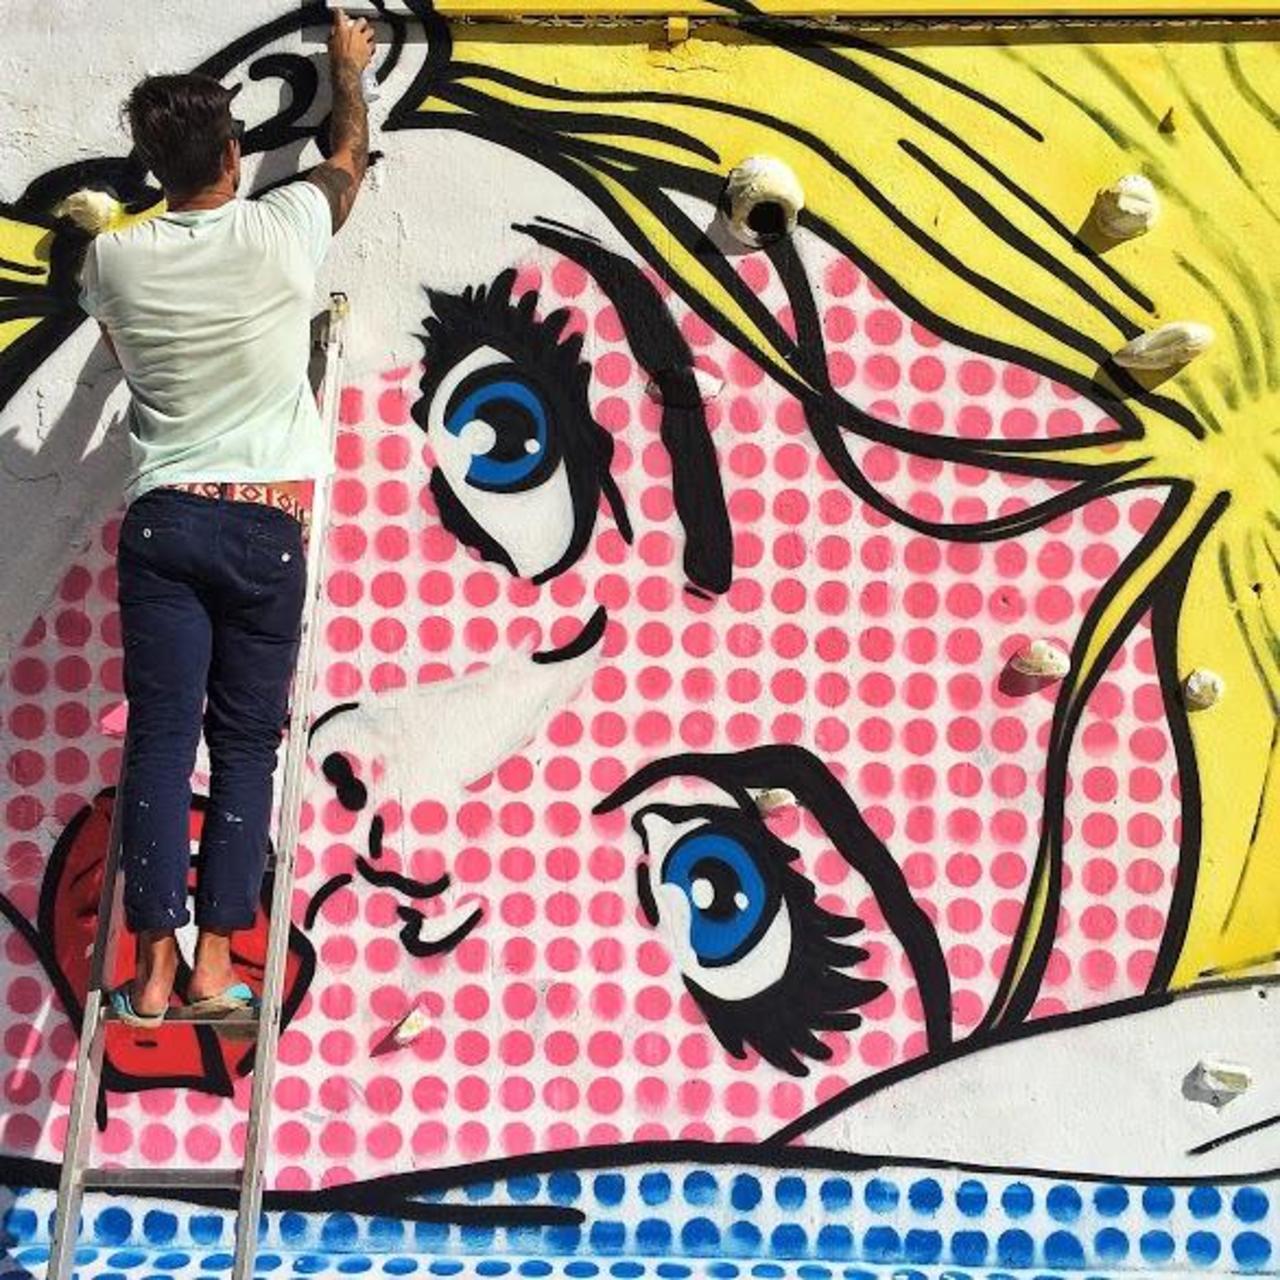 RT @Pitchuskita: Stepan Krasnov
Barcelona
#streetart #art #graffiti #murals http://t.co/qWJpwl7iW7